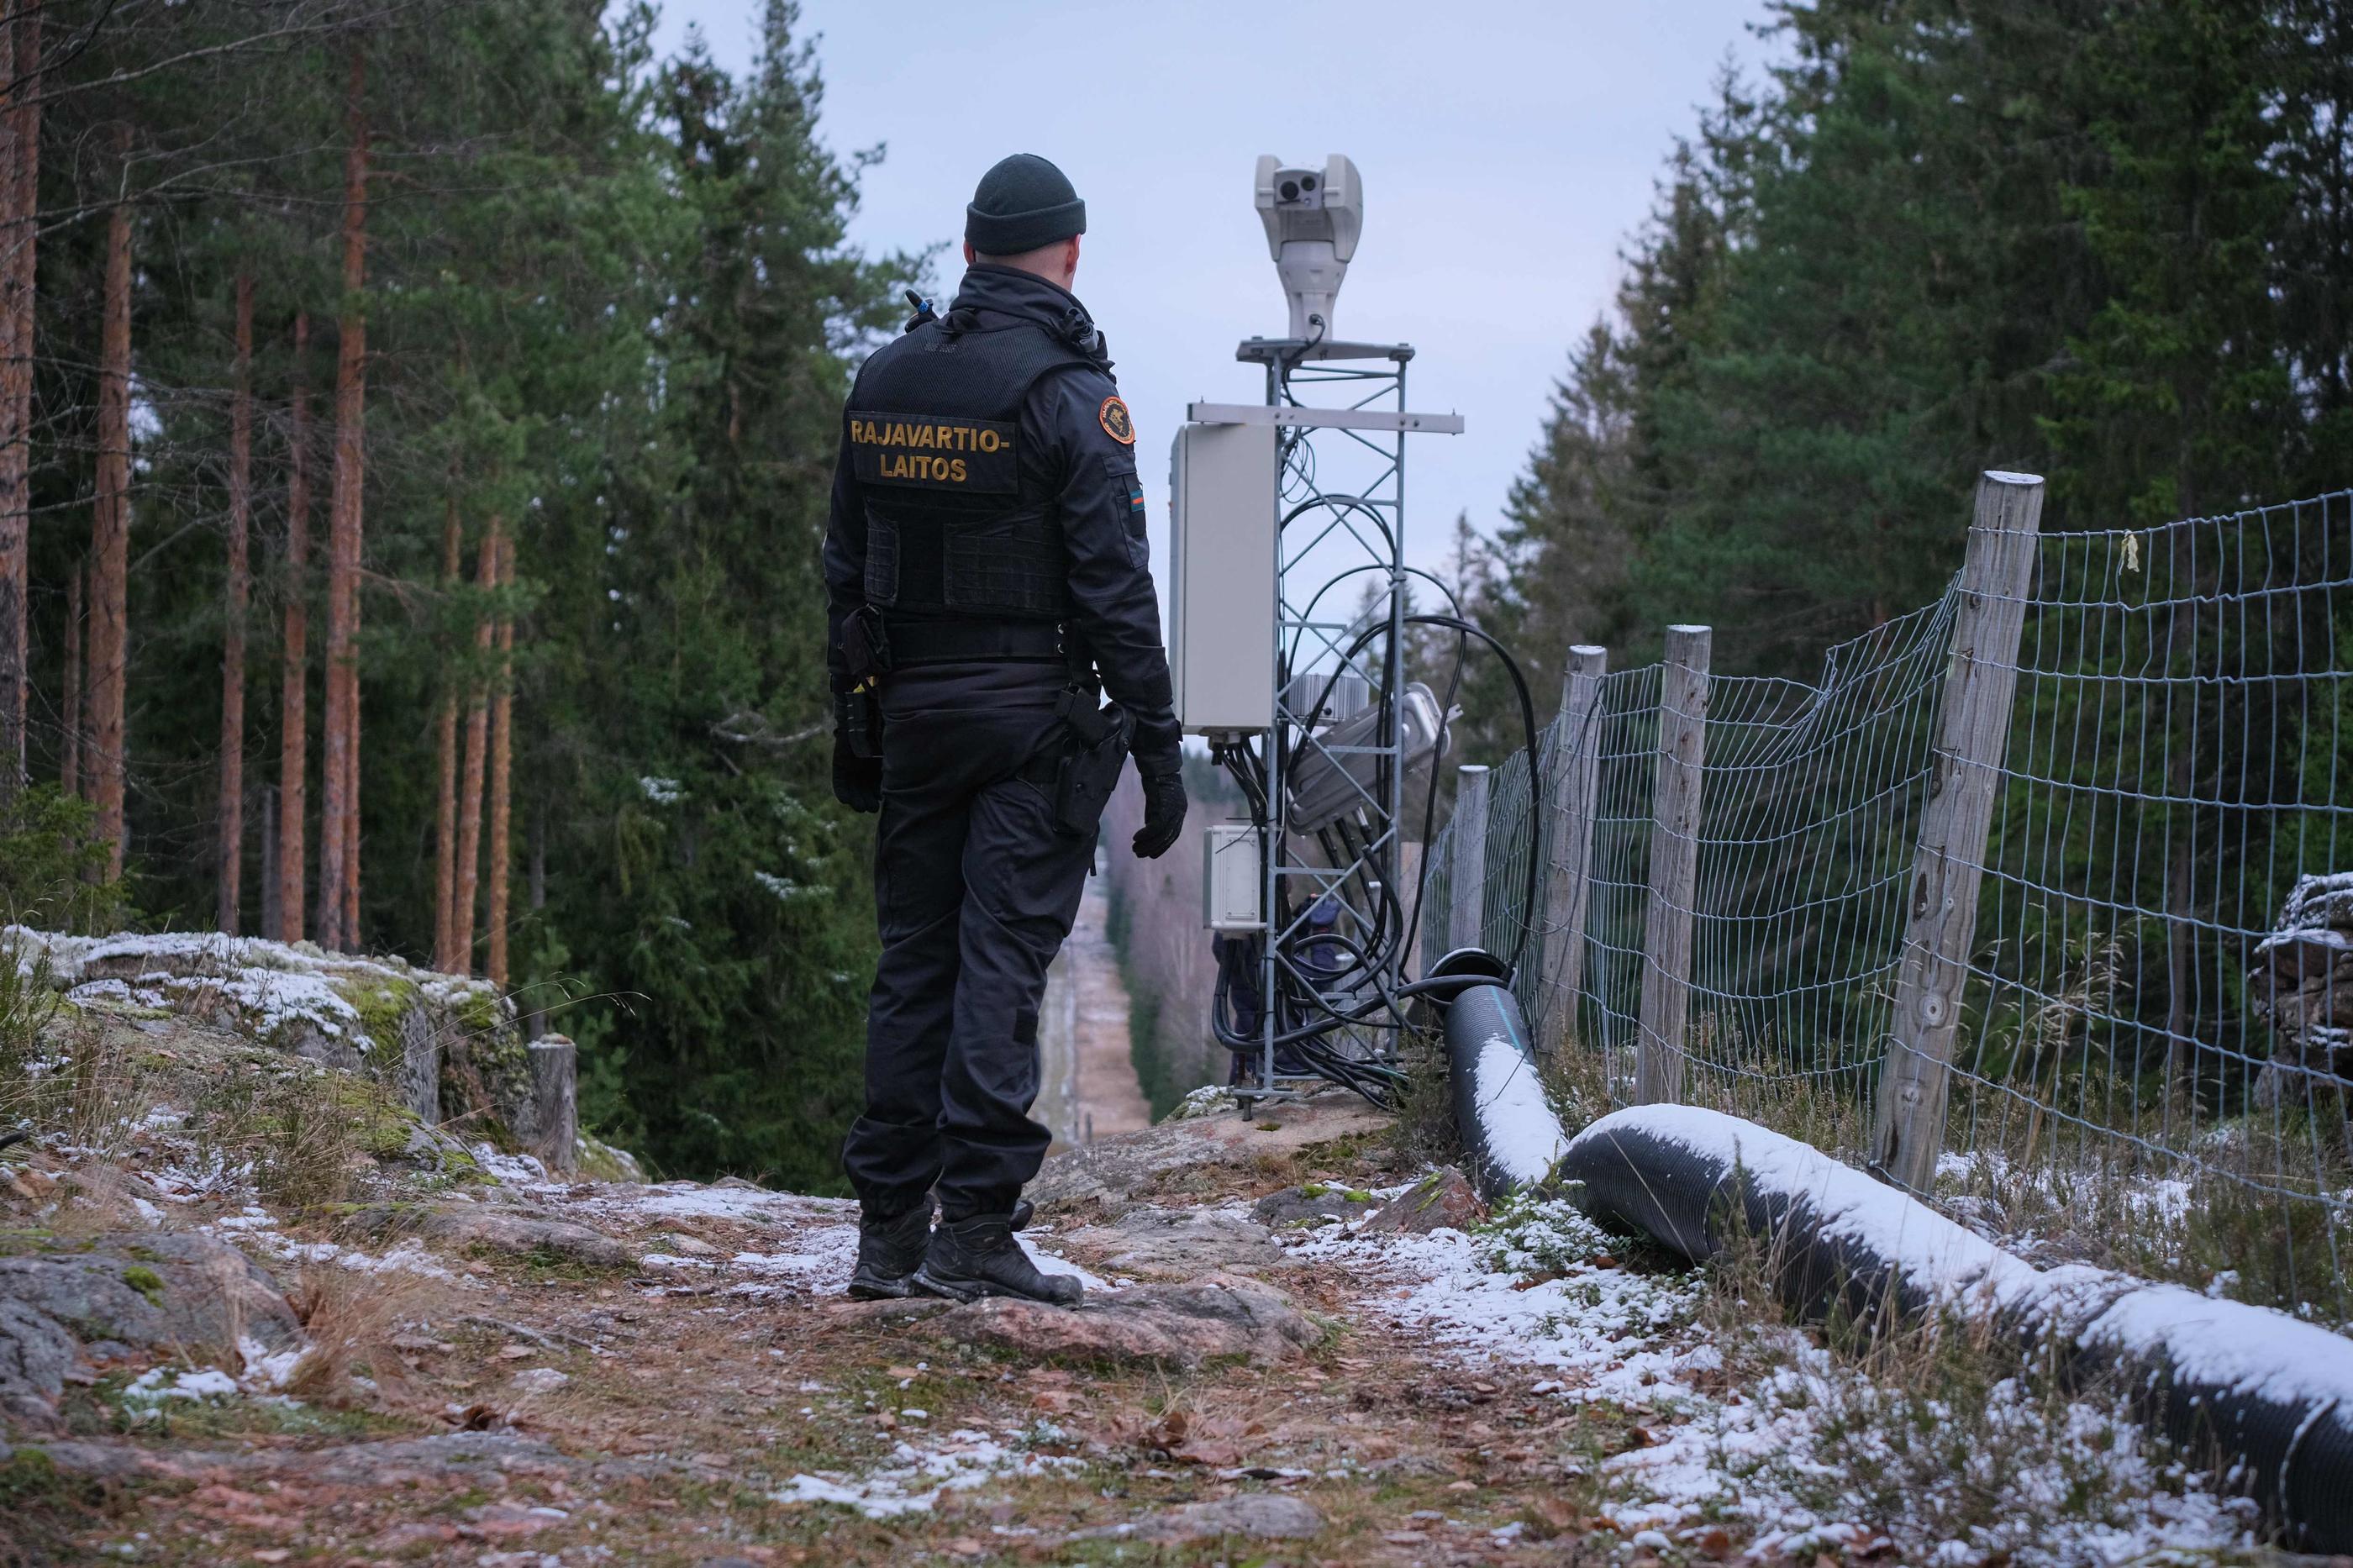 Depuis l'invasion de l'Ukraine par Vladimir Poutine, la Finlande a renforcée la sécurité à ses frontières avec la Russie. AFP/Alessandro Rampazzo